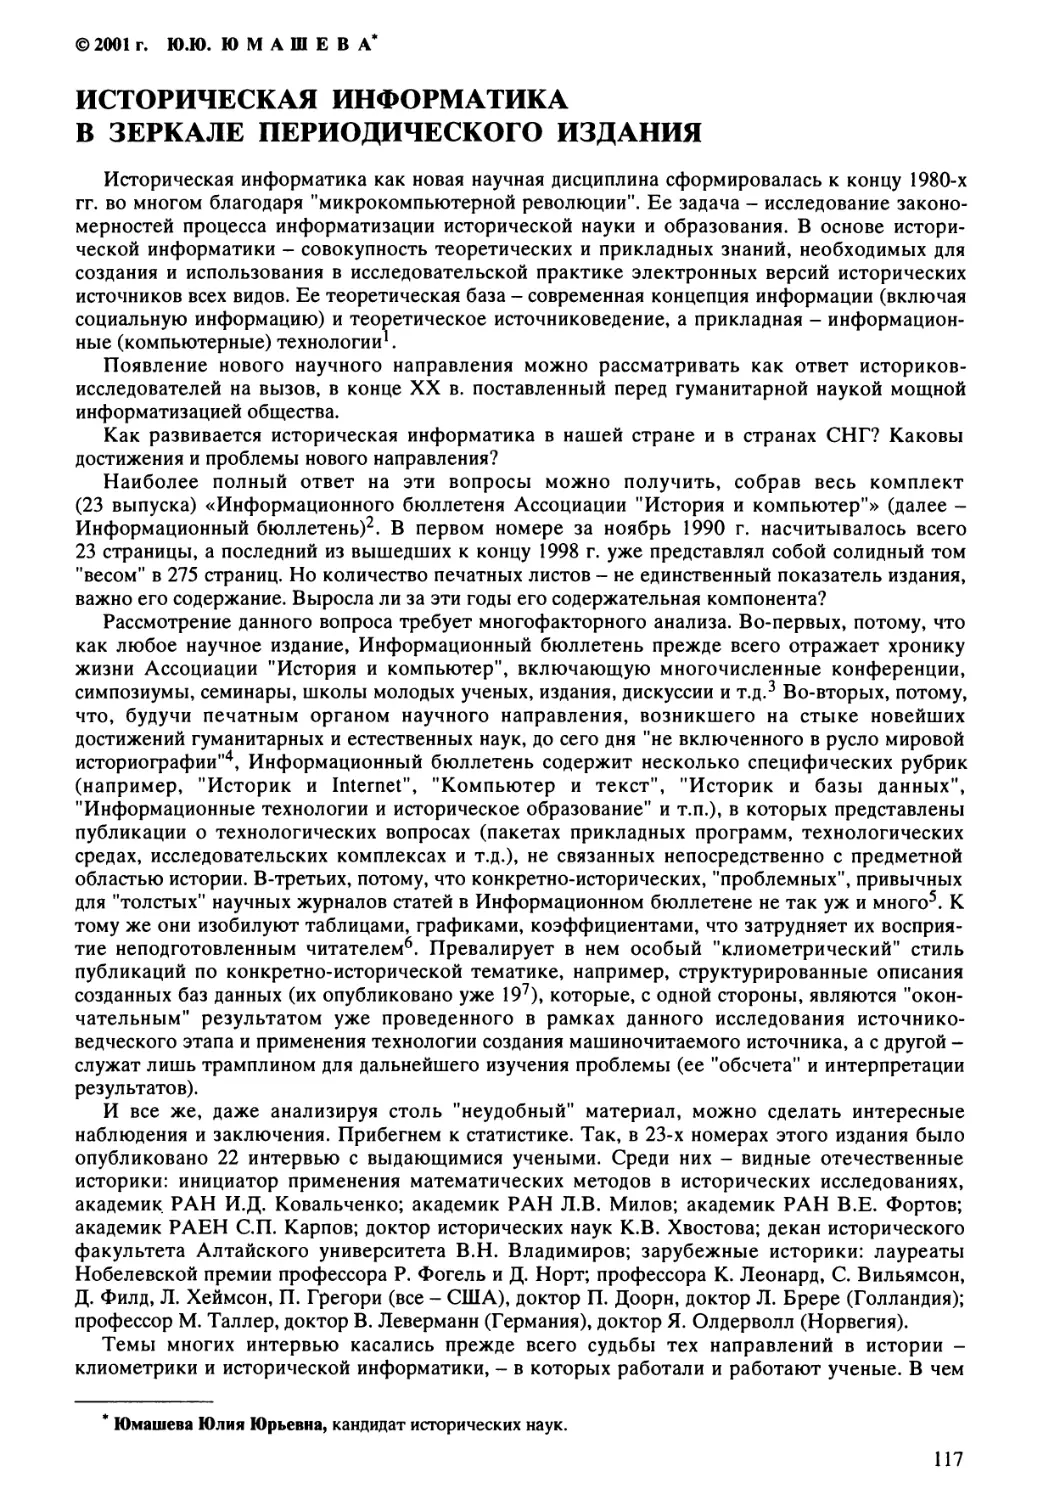 Юмашева Ю.Ю. - Историческая информатика в зеркале периодического издания